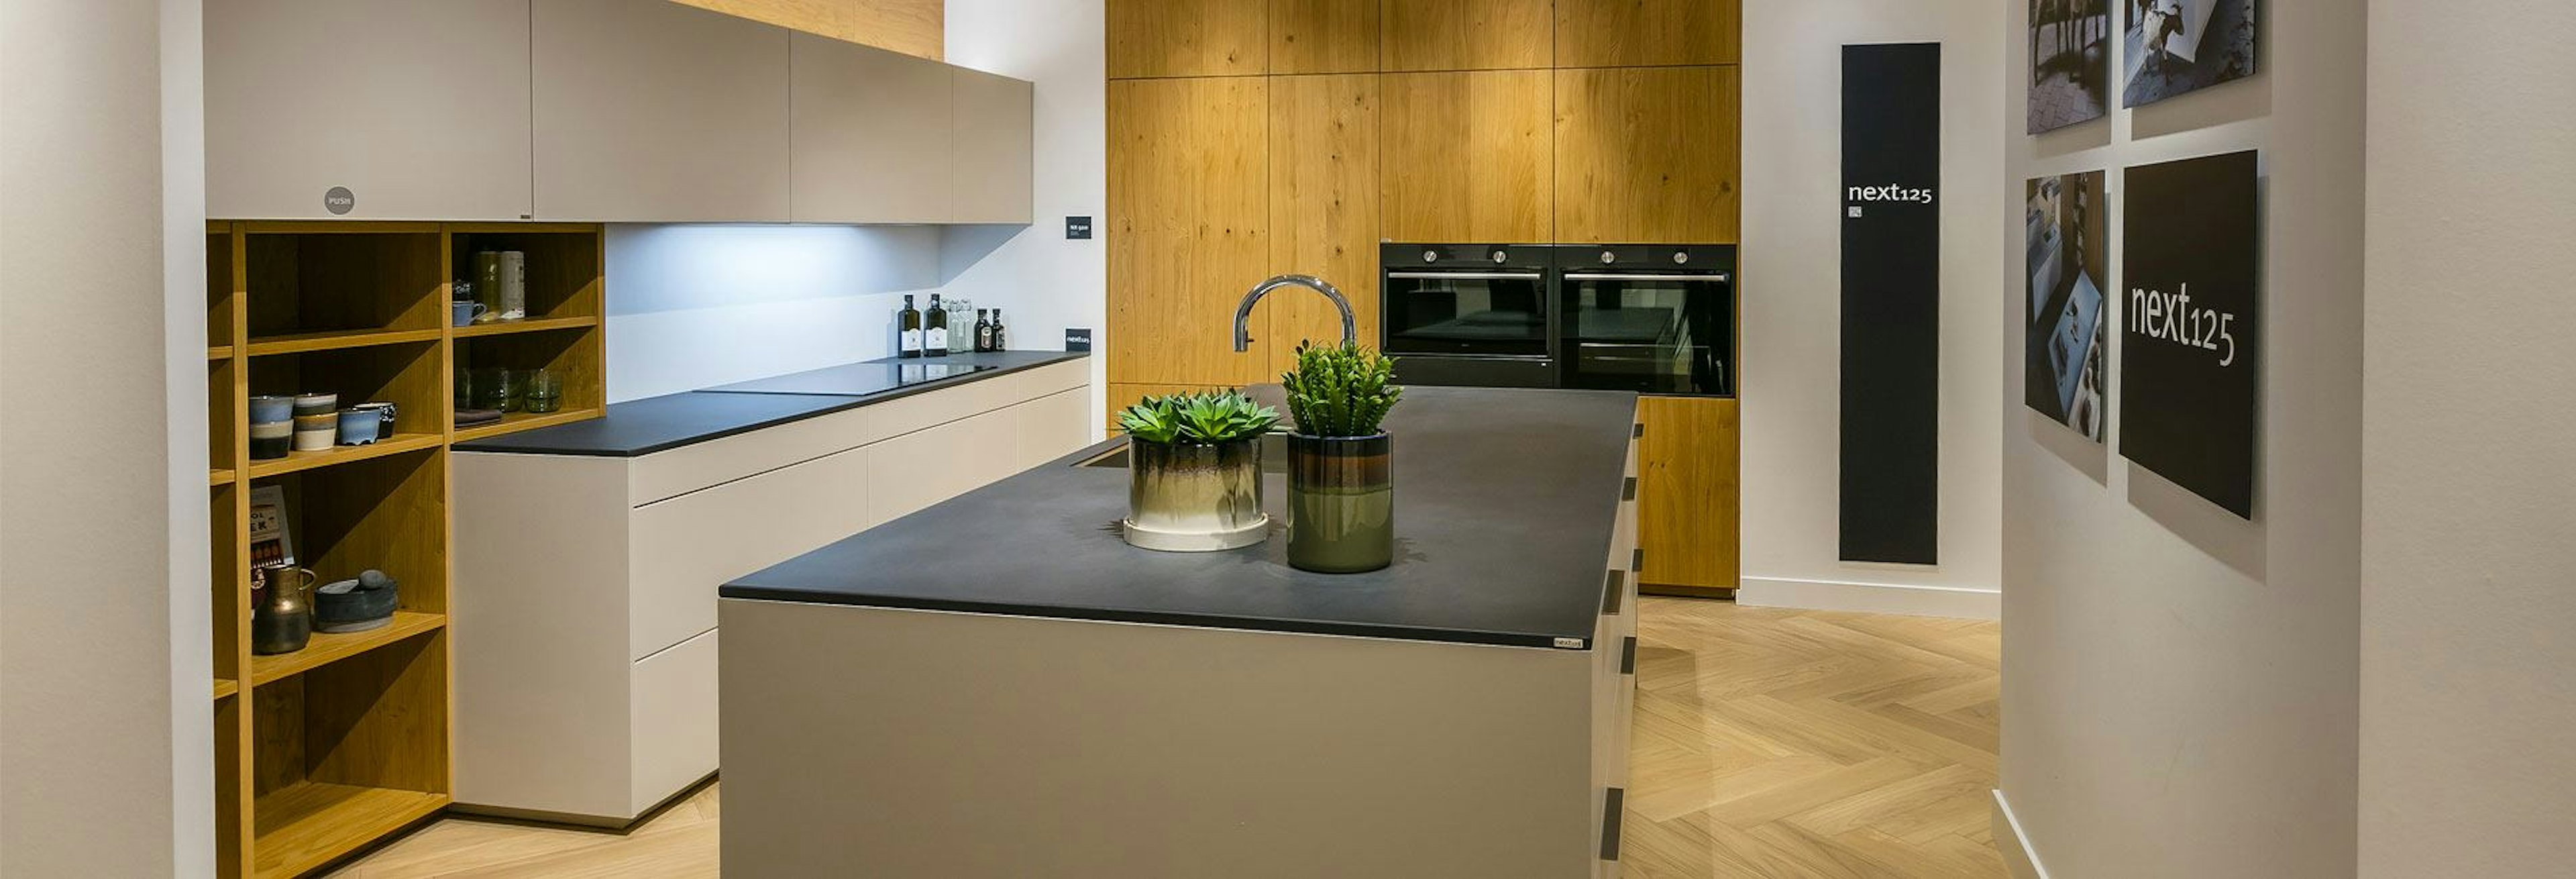 Zandgrijze keuken met betonlight blad